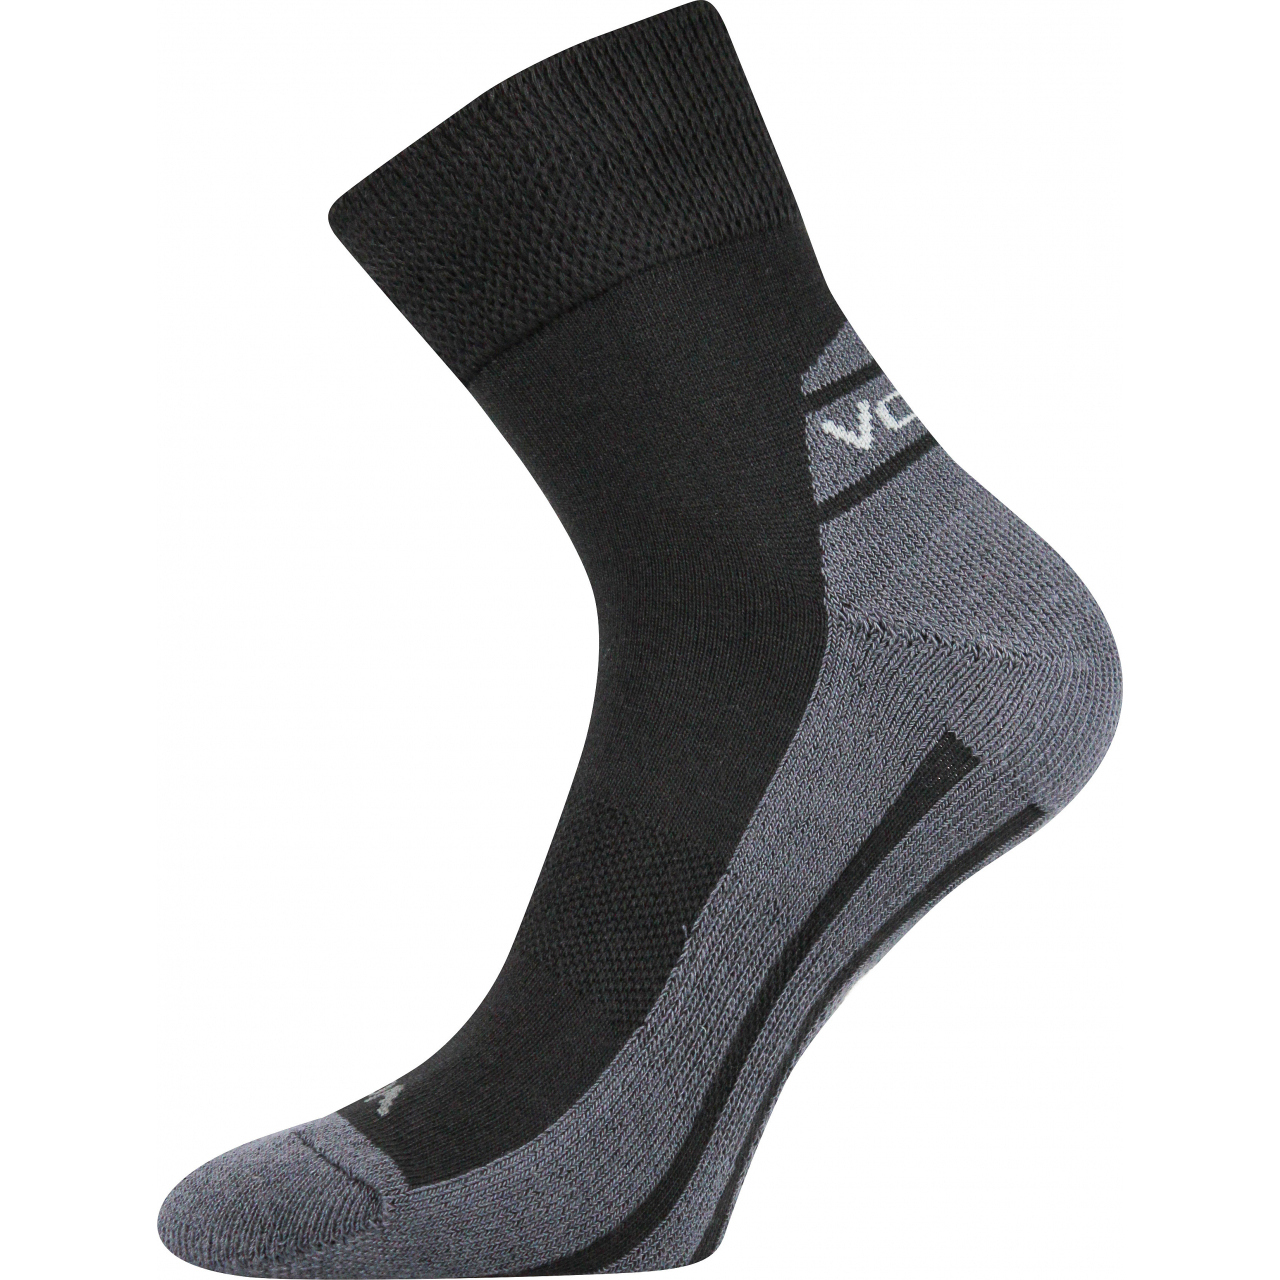 Ponožky sportovní Voxx Oliver - černé-šedé, 35-38